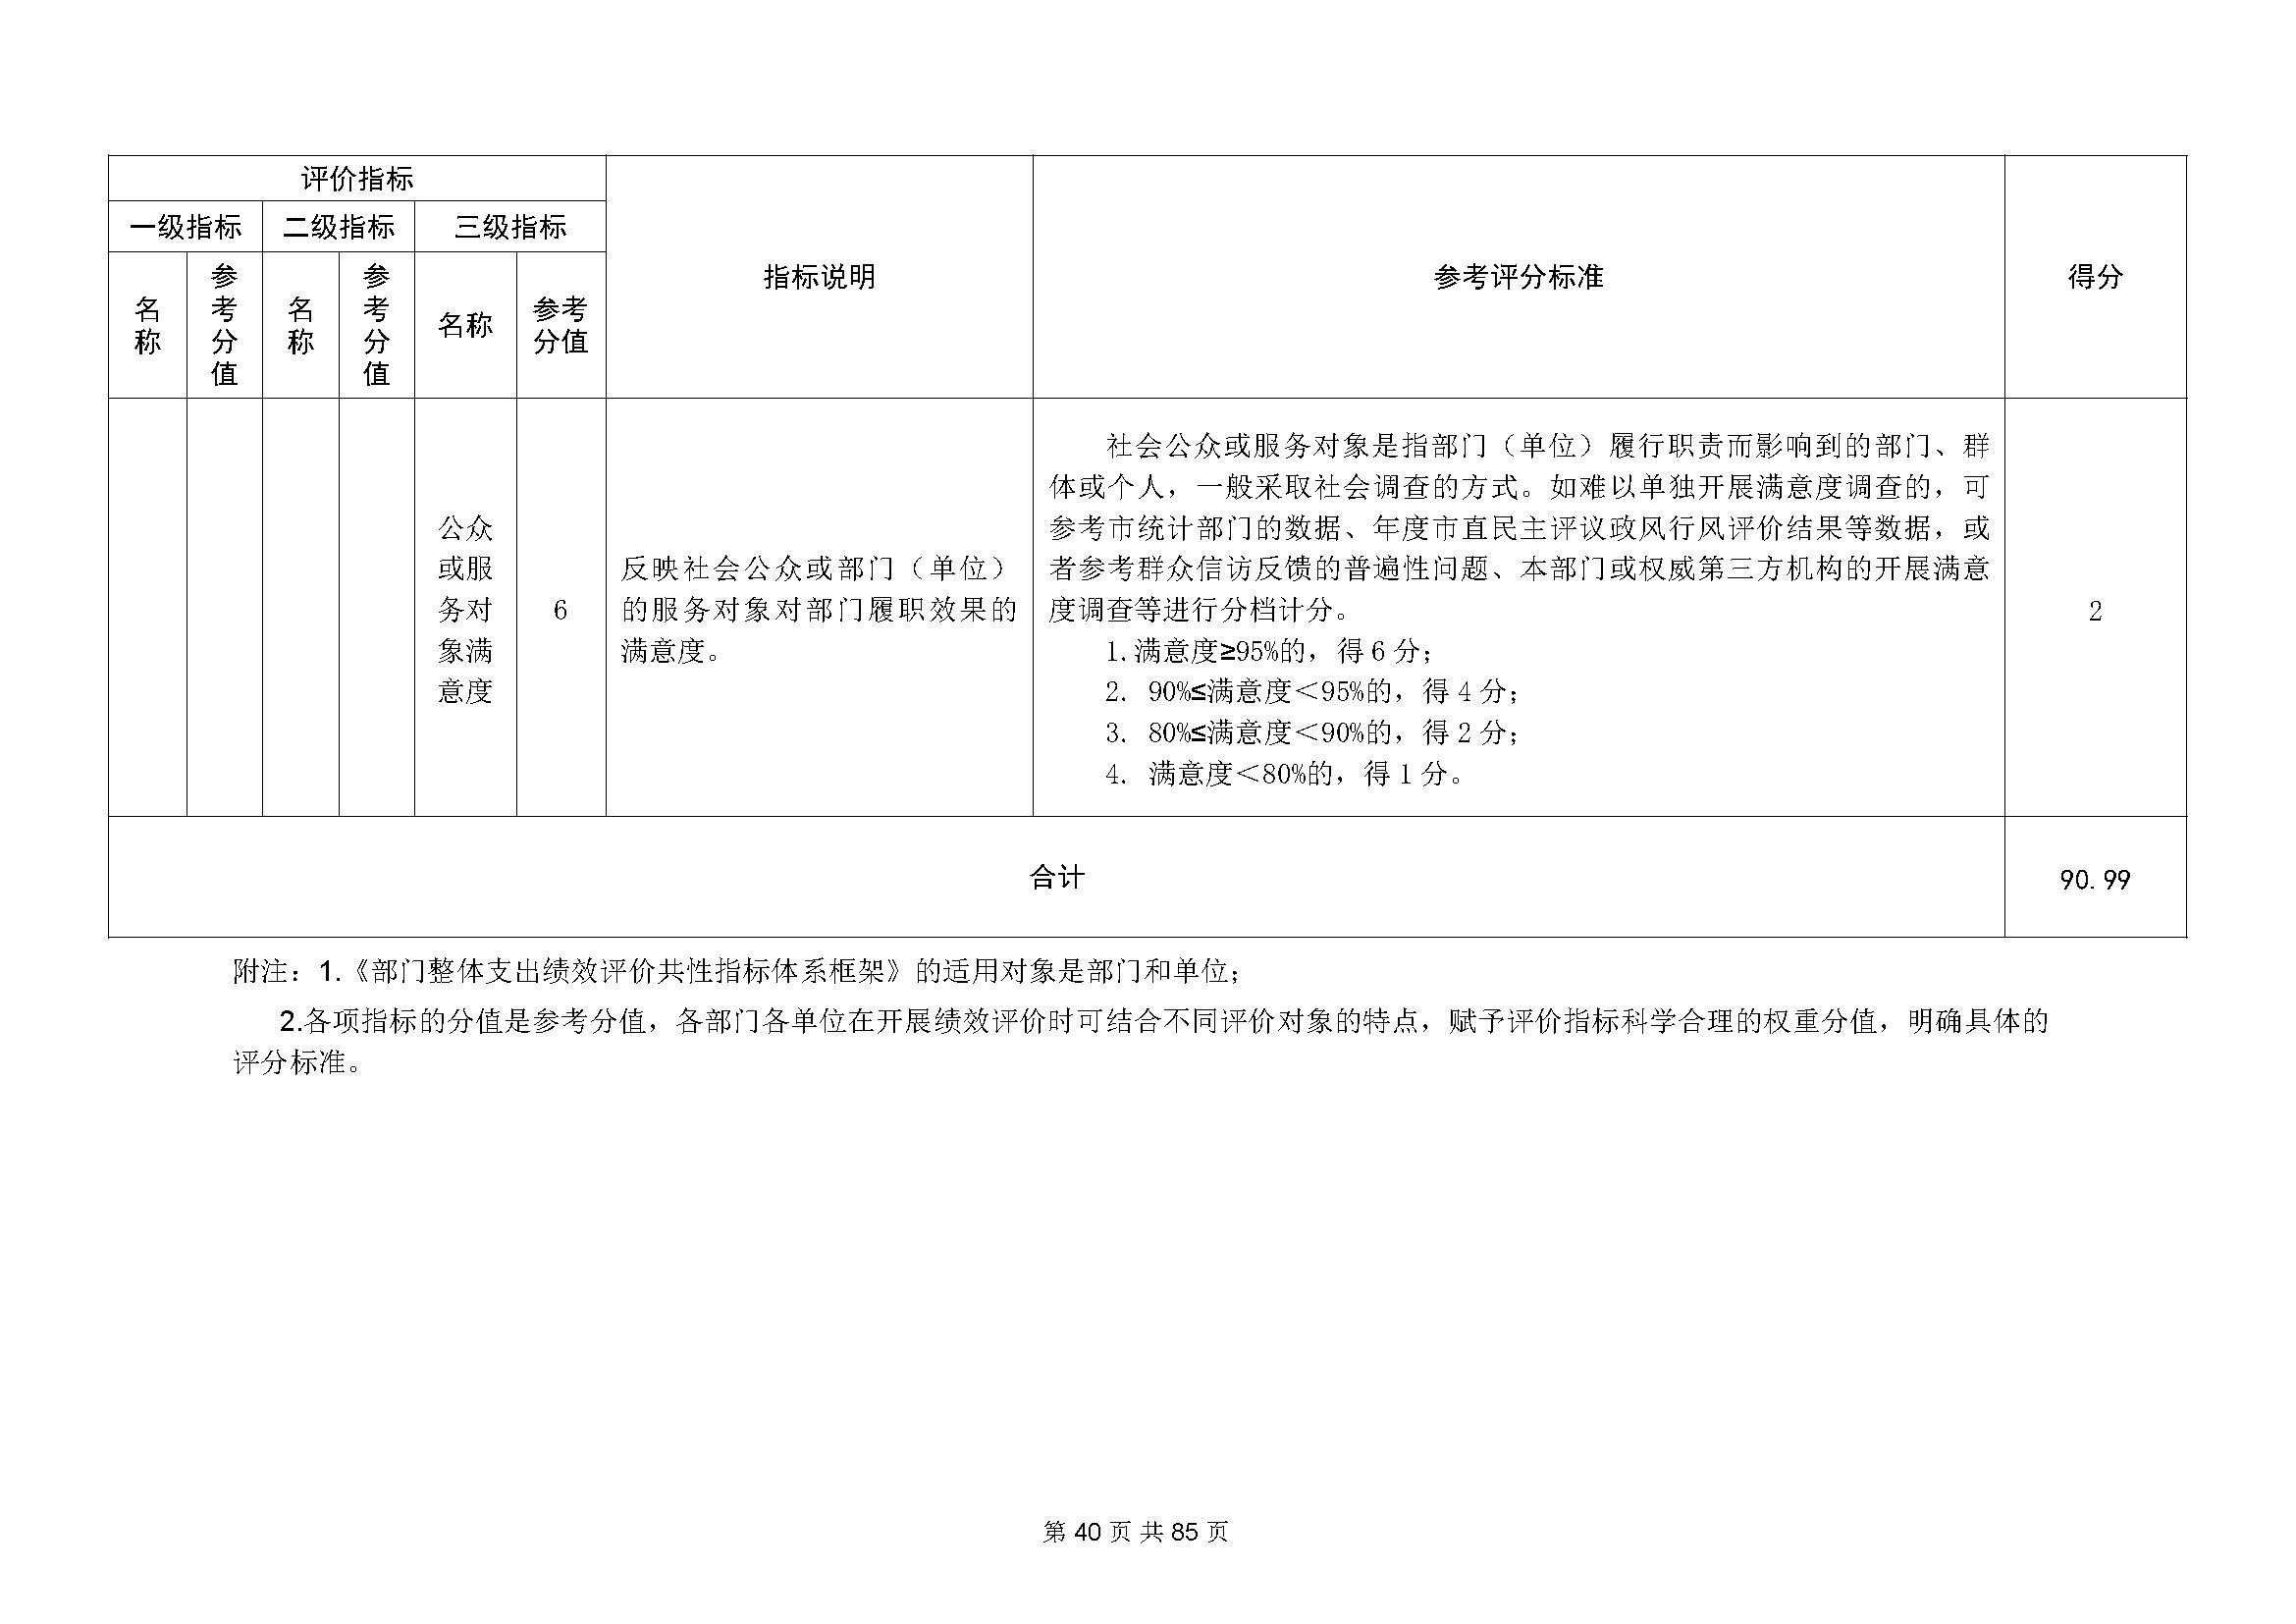 深圳市招生考试办公室2020年度部门决算_页面_41.jpg